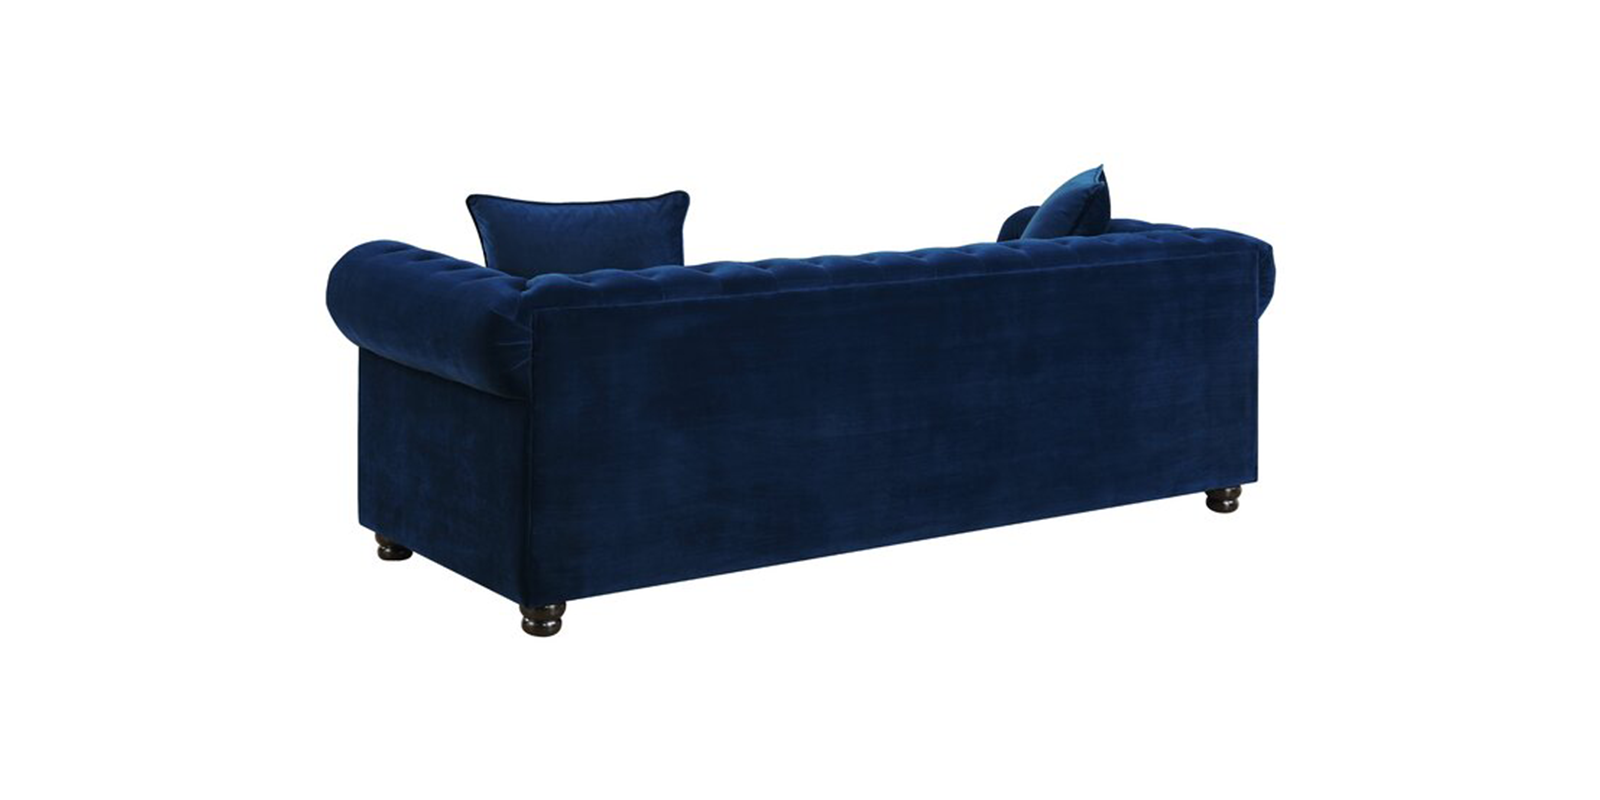 Perceptive Velvet 3 Seater Sofa in Navy Blue Colour - Dreamzz ...